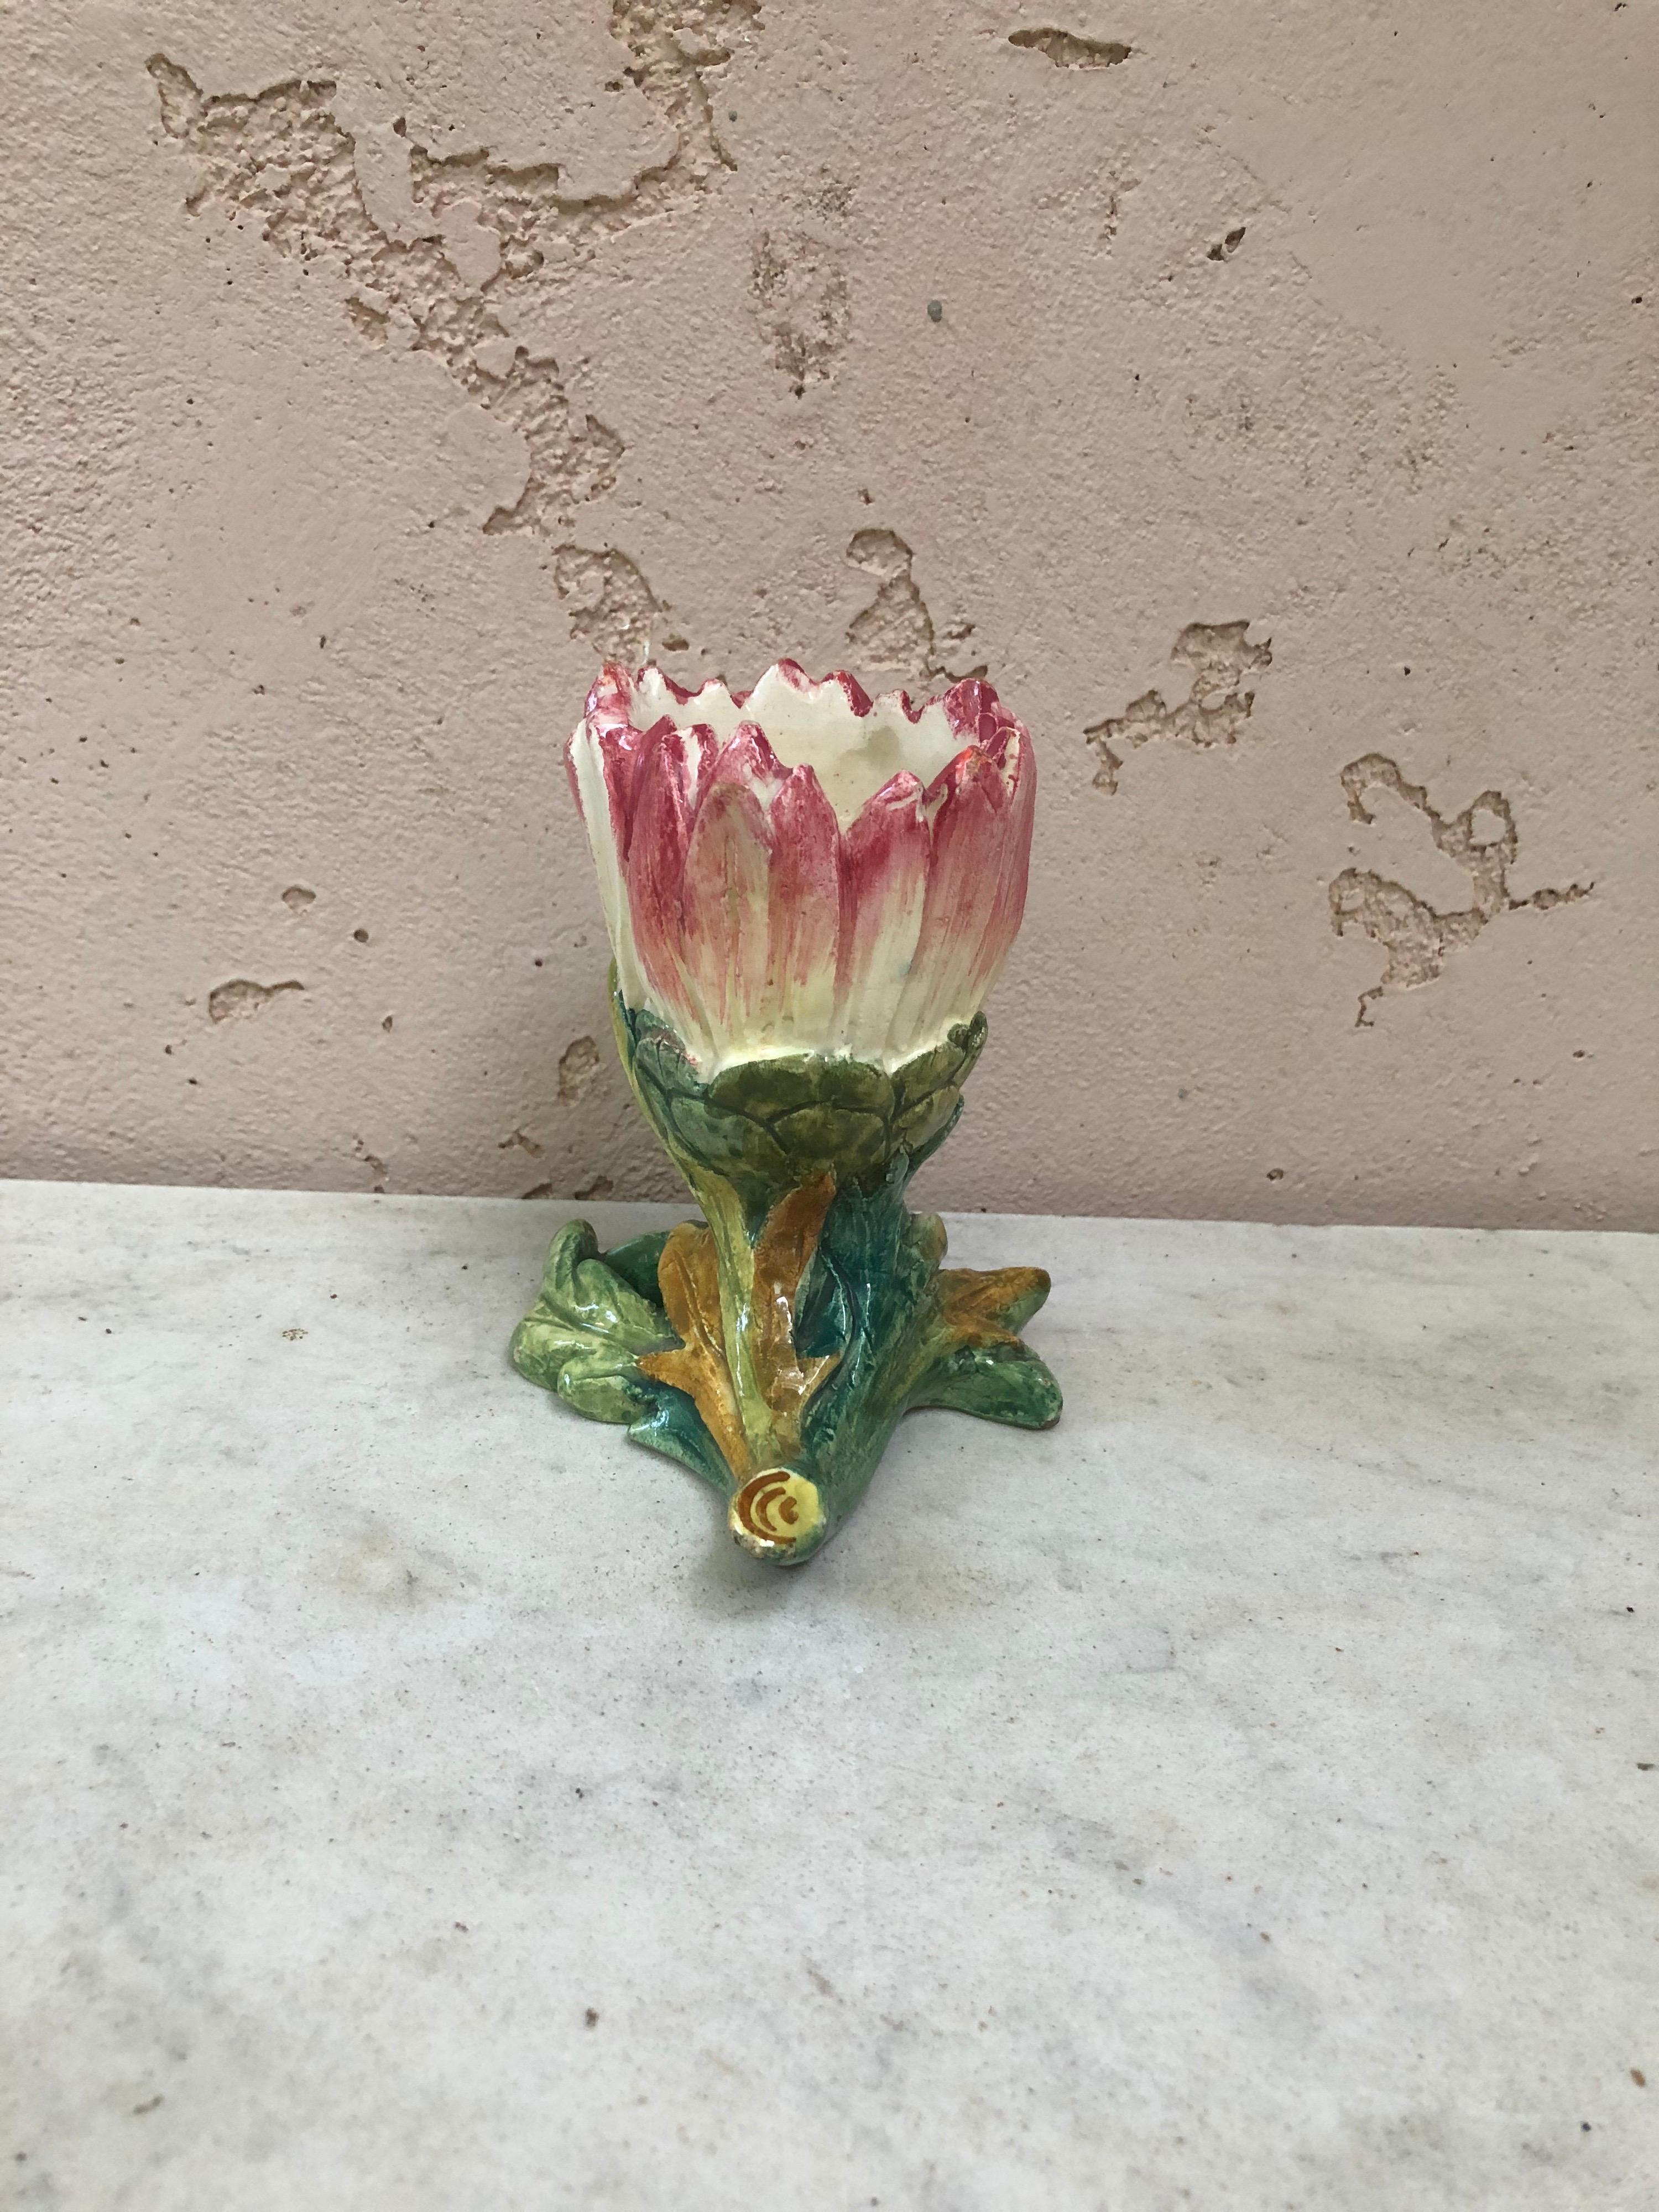 Vase à marguerite en majolique du 19e siècle Delphin Massier.
La famille Massier est connue pour la qualité de ses émaux et peintures uniques. Ils produisaient une incroyable gamme de fleurs comme l'iris, les roses, les marguerites, les églantines,